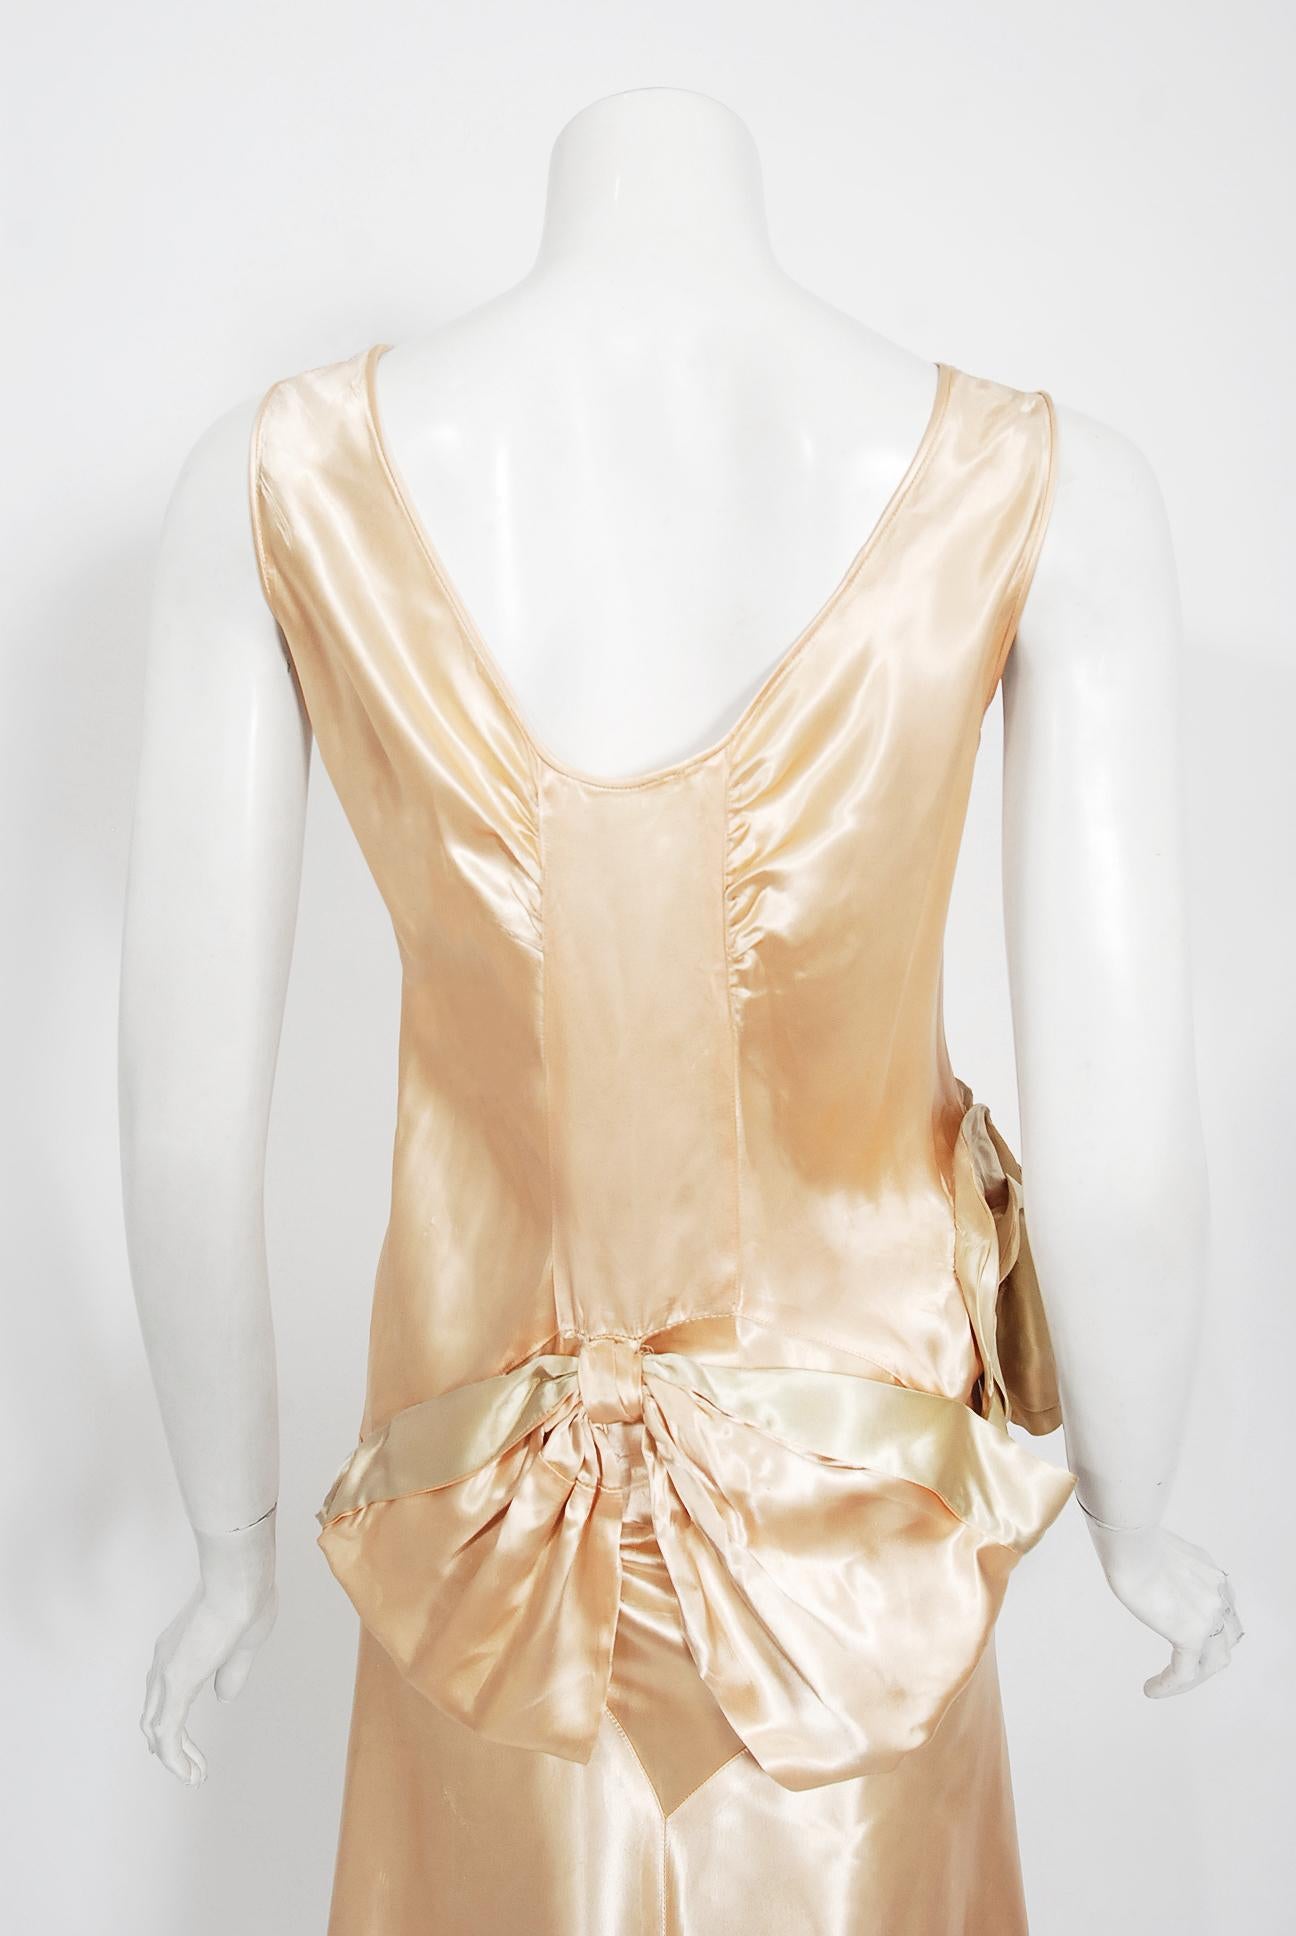 Vintage 1930's Champagne-Pink Silk Satin Floral Applique Bias-Cut Bridal Gown  2